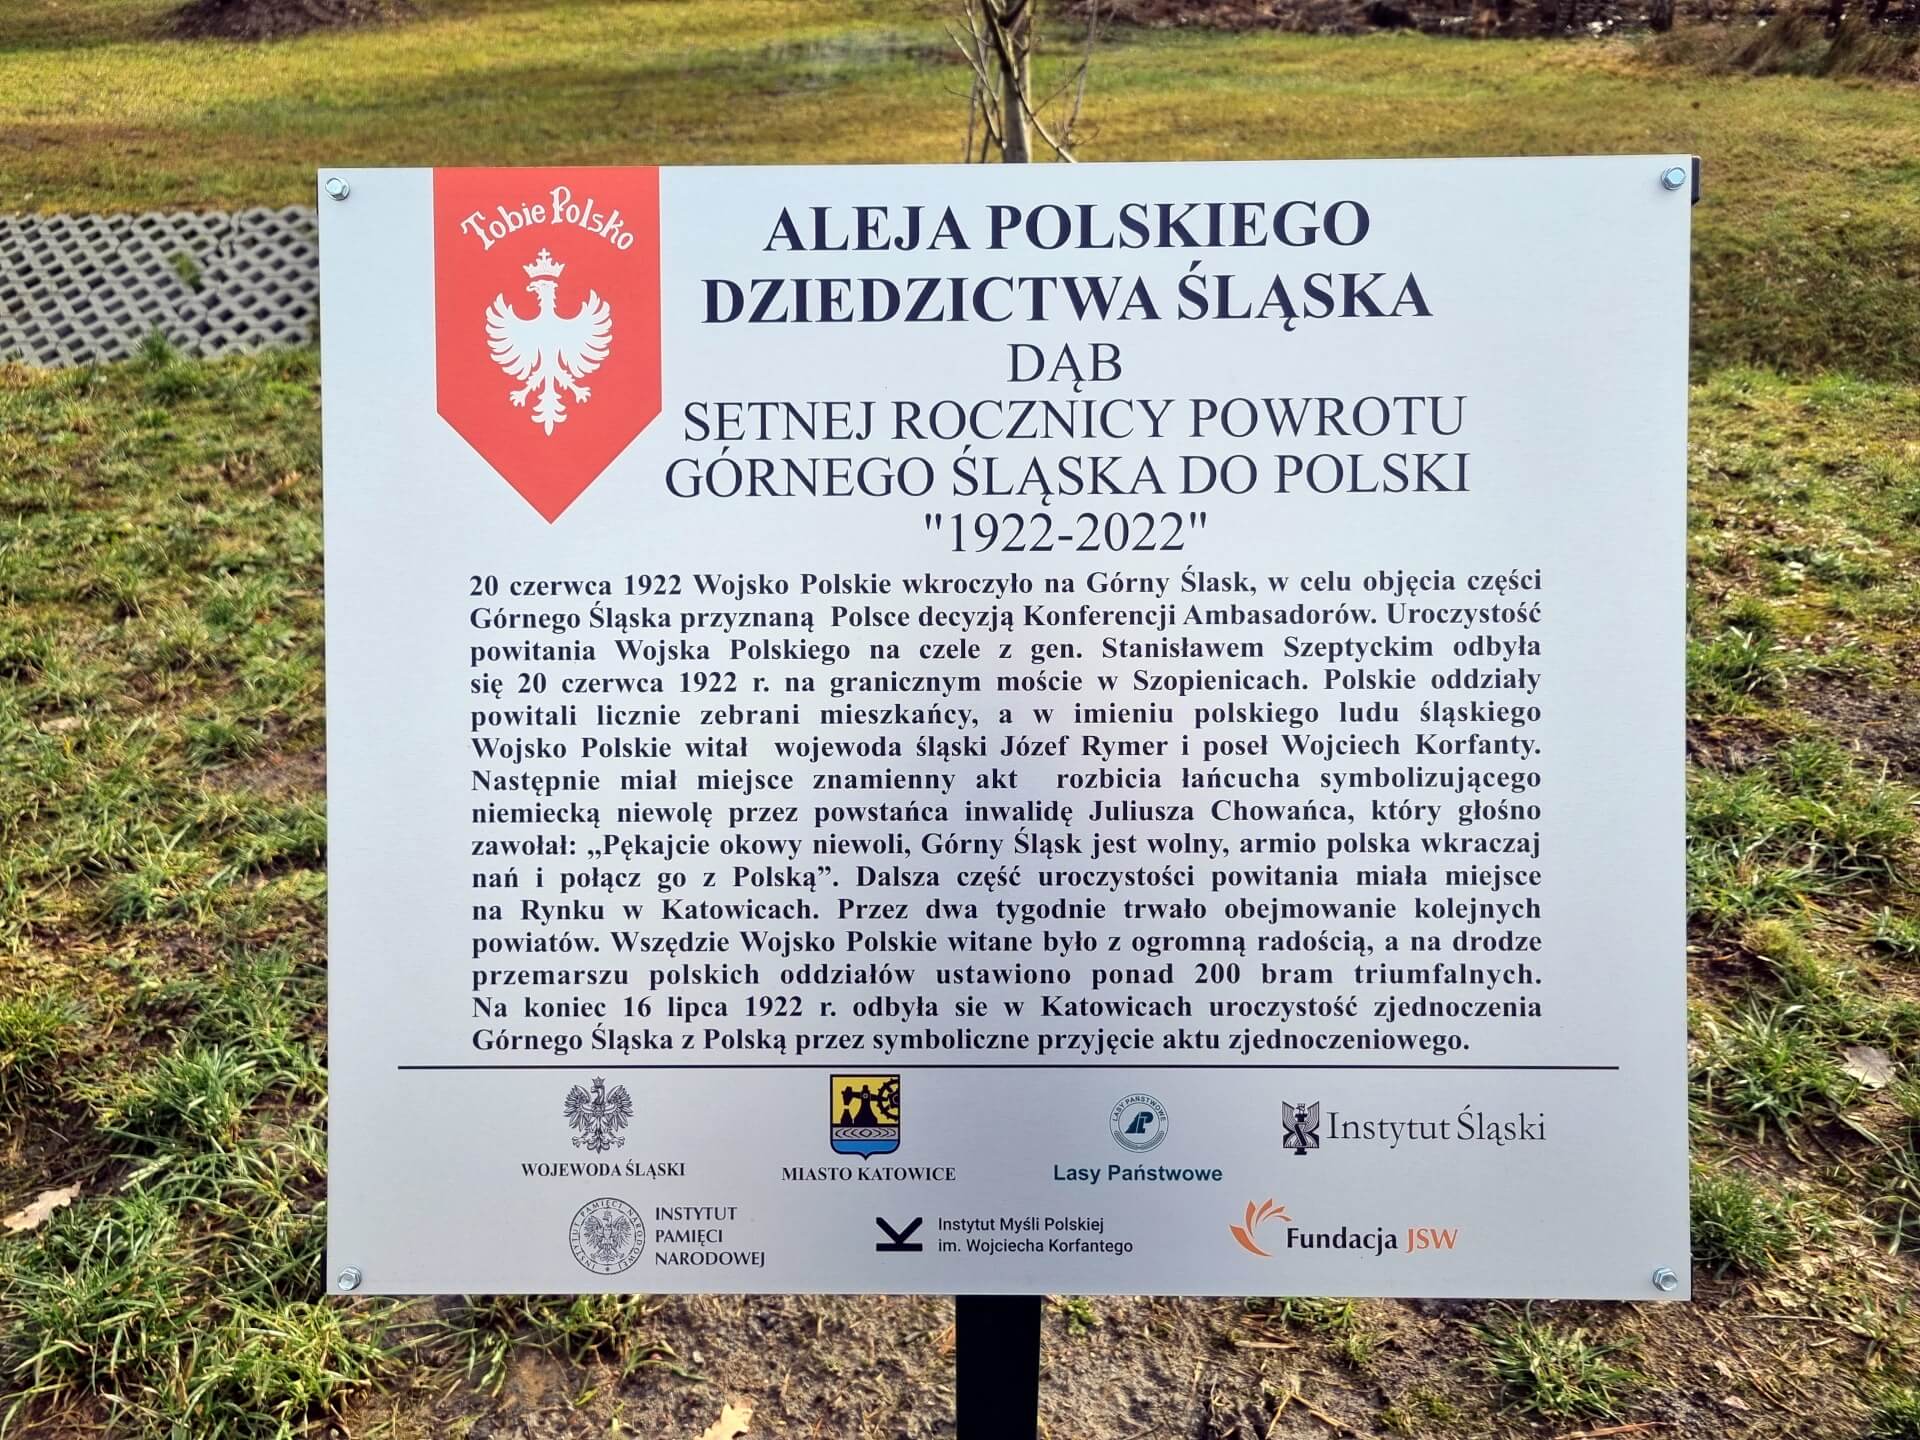 Tabliczka na dębie setnej rocznicy powrotu Górnego Śląska do Polski w alei Polskiego Dziedzictwa Śląska